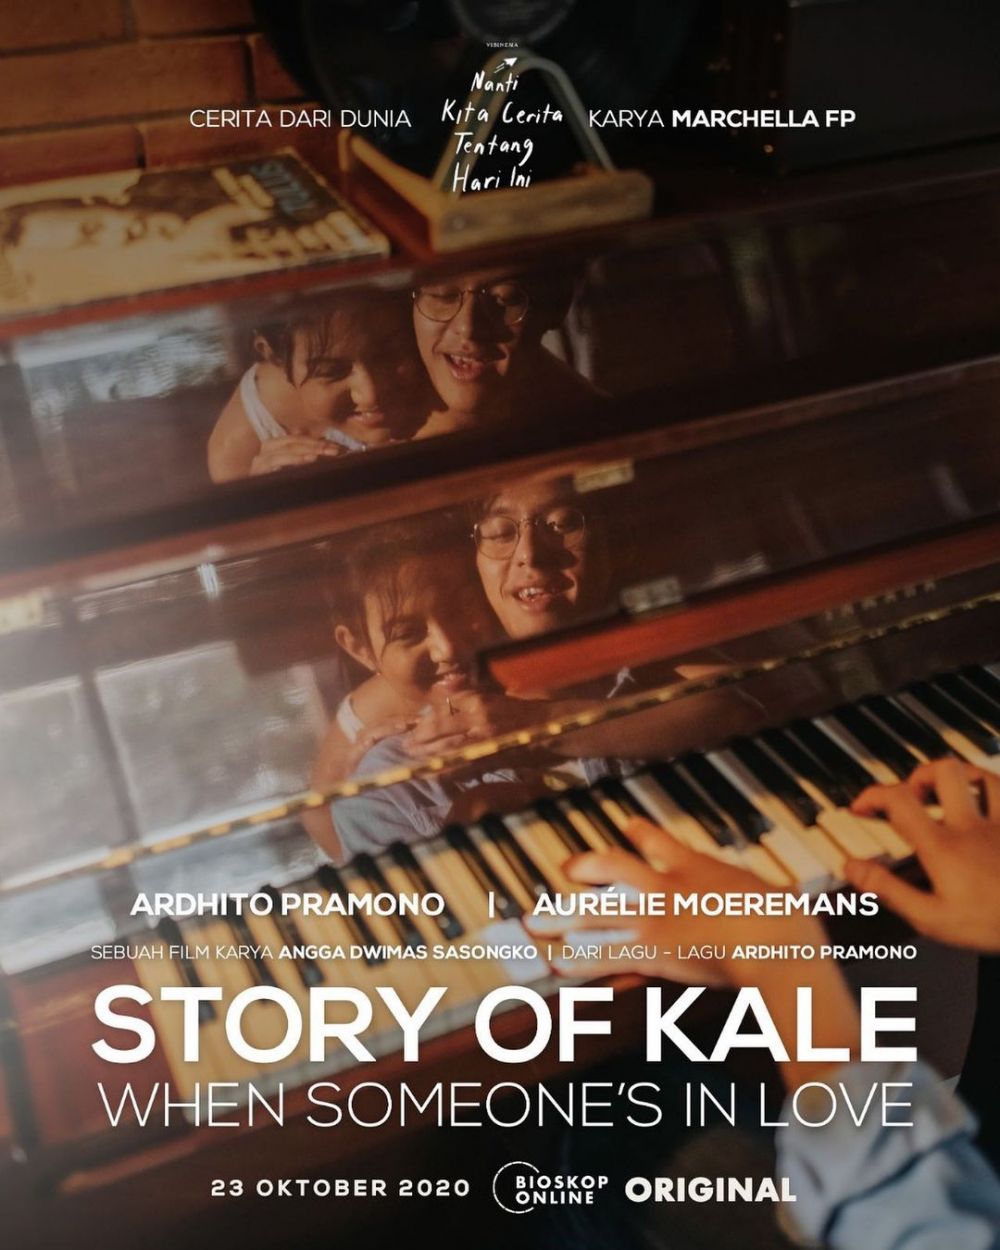 Main film Story Of Kale, Aurelie Moeremans teringat masa lalunya